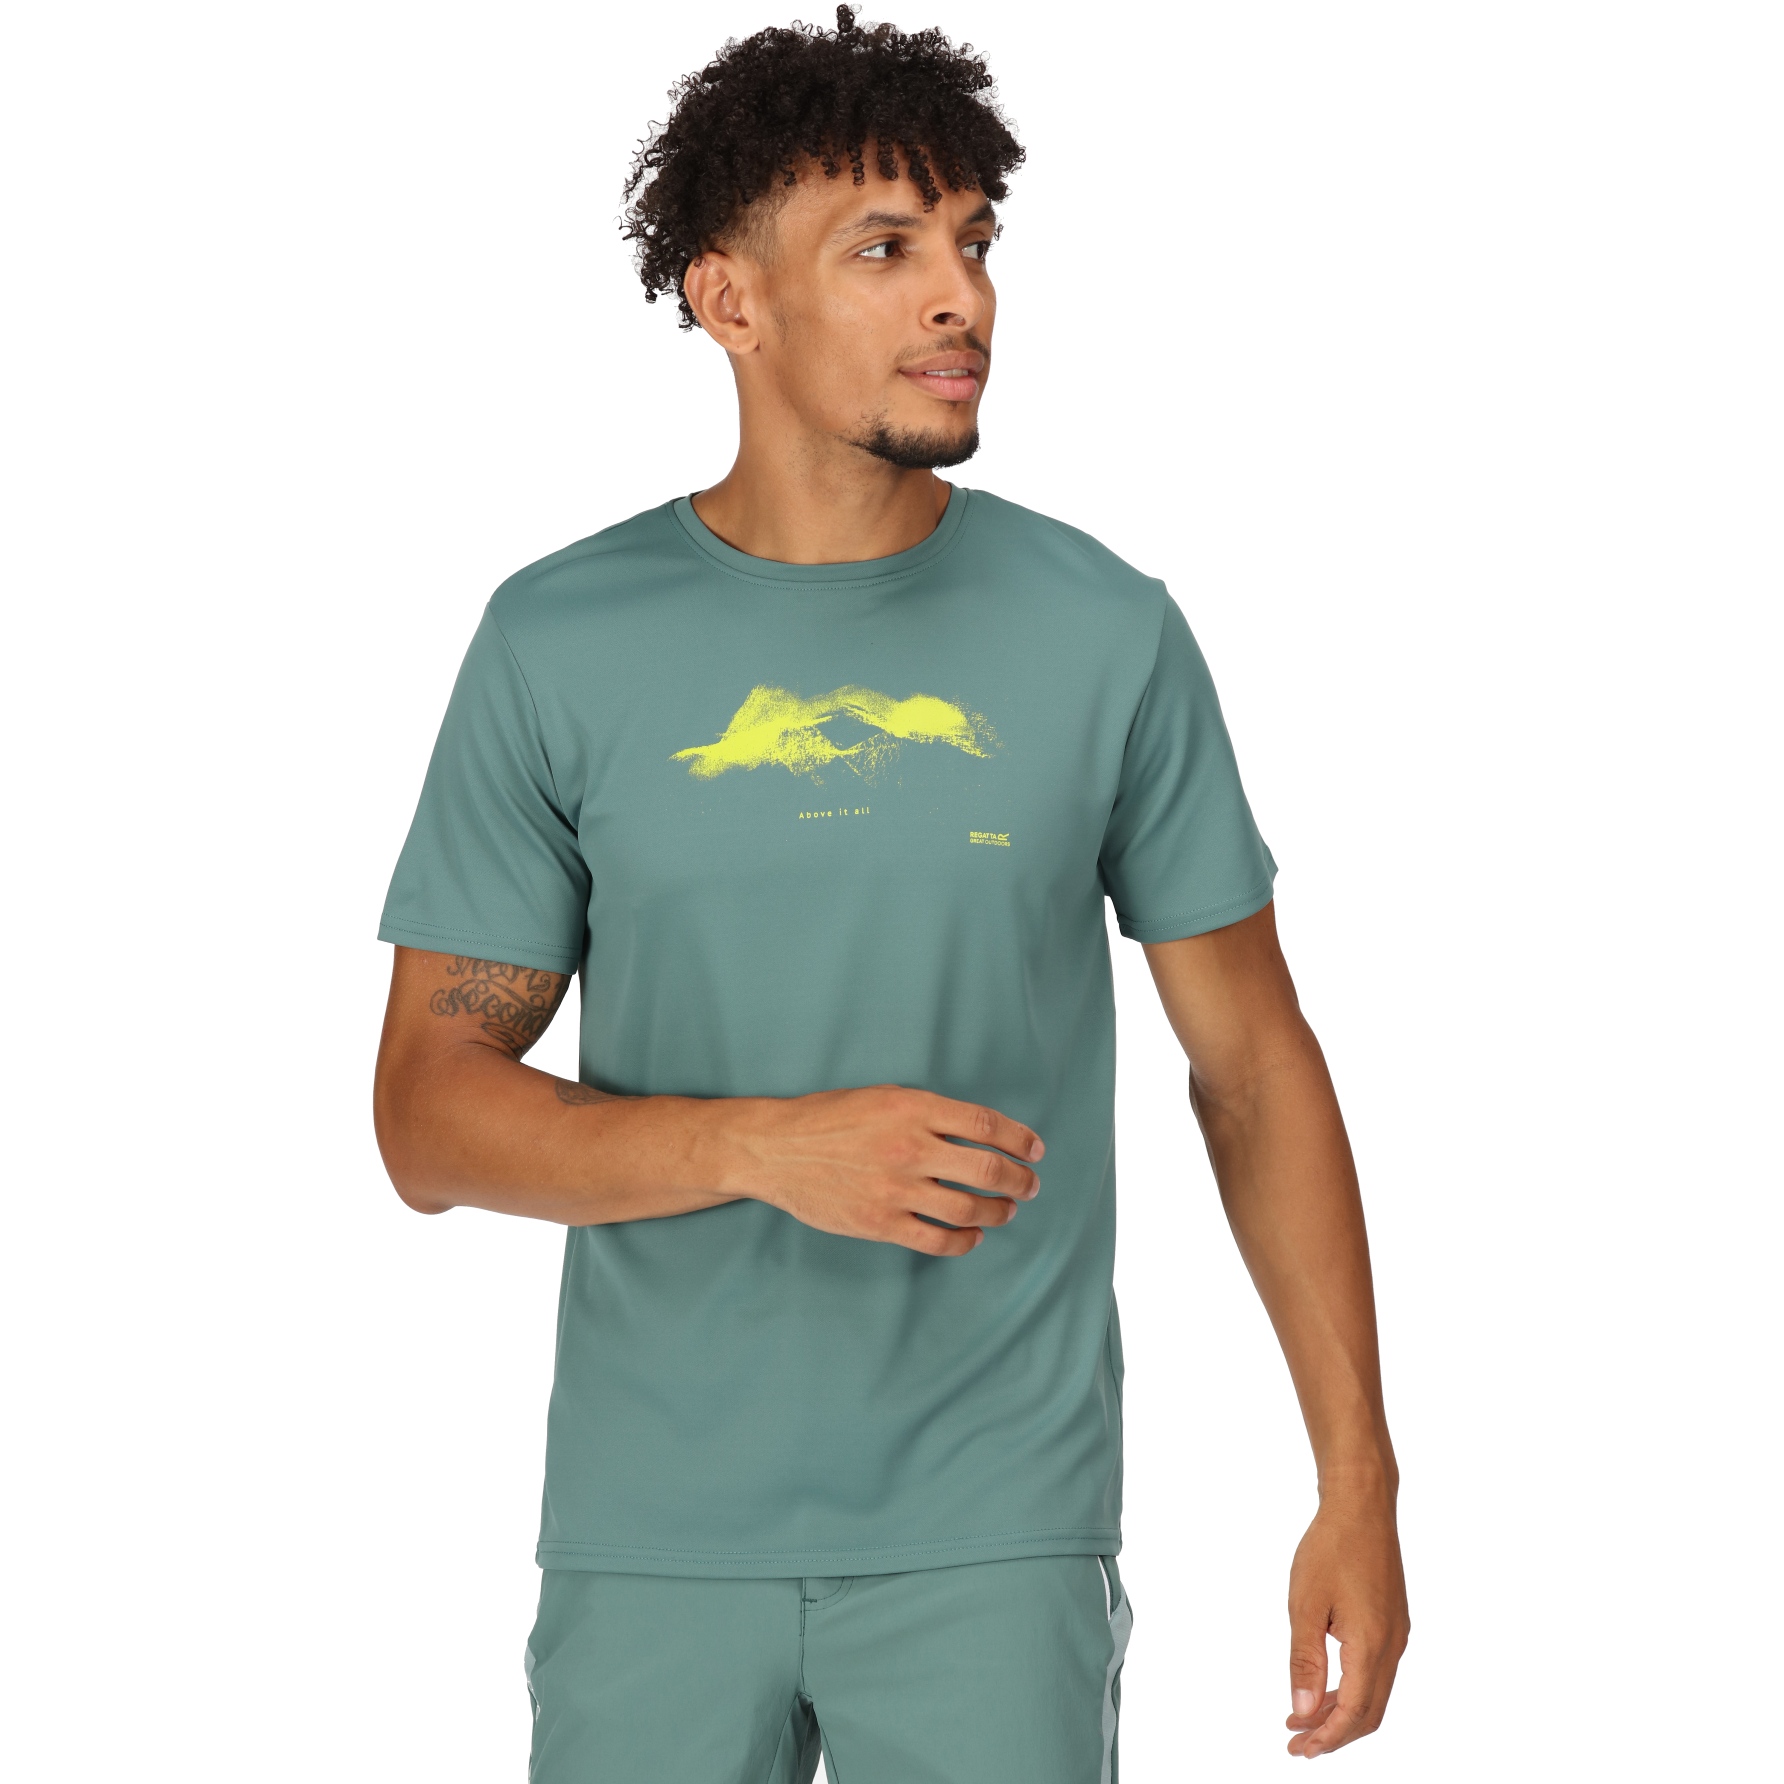 Produktbild von Regatta Fingal VII T-Shirt - Sea Pine G79